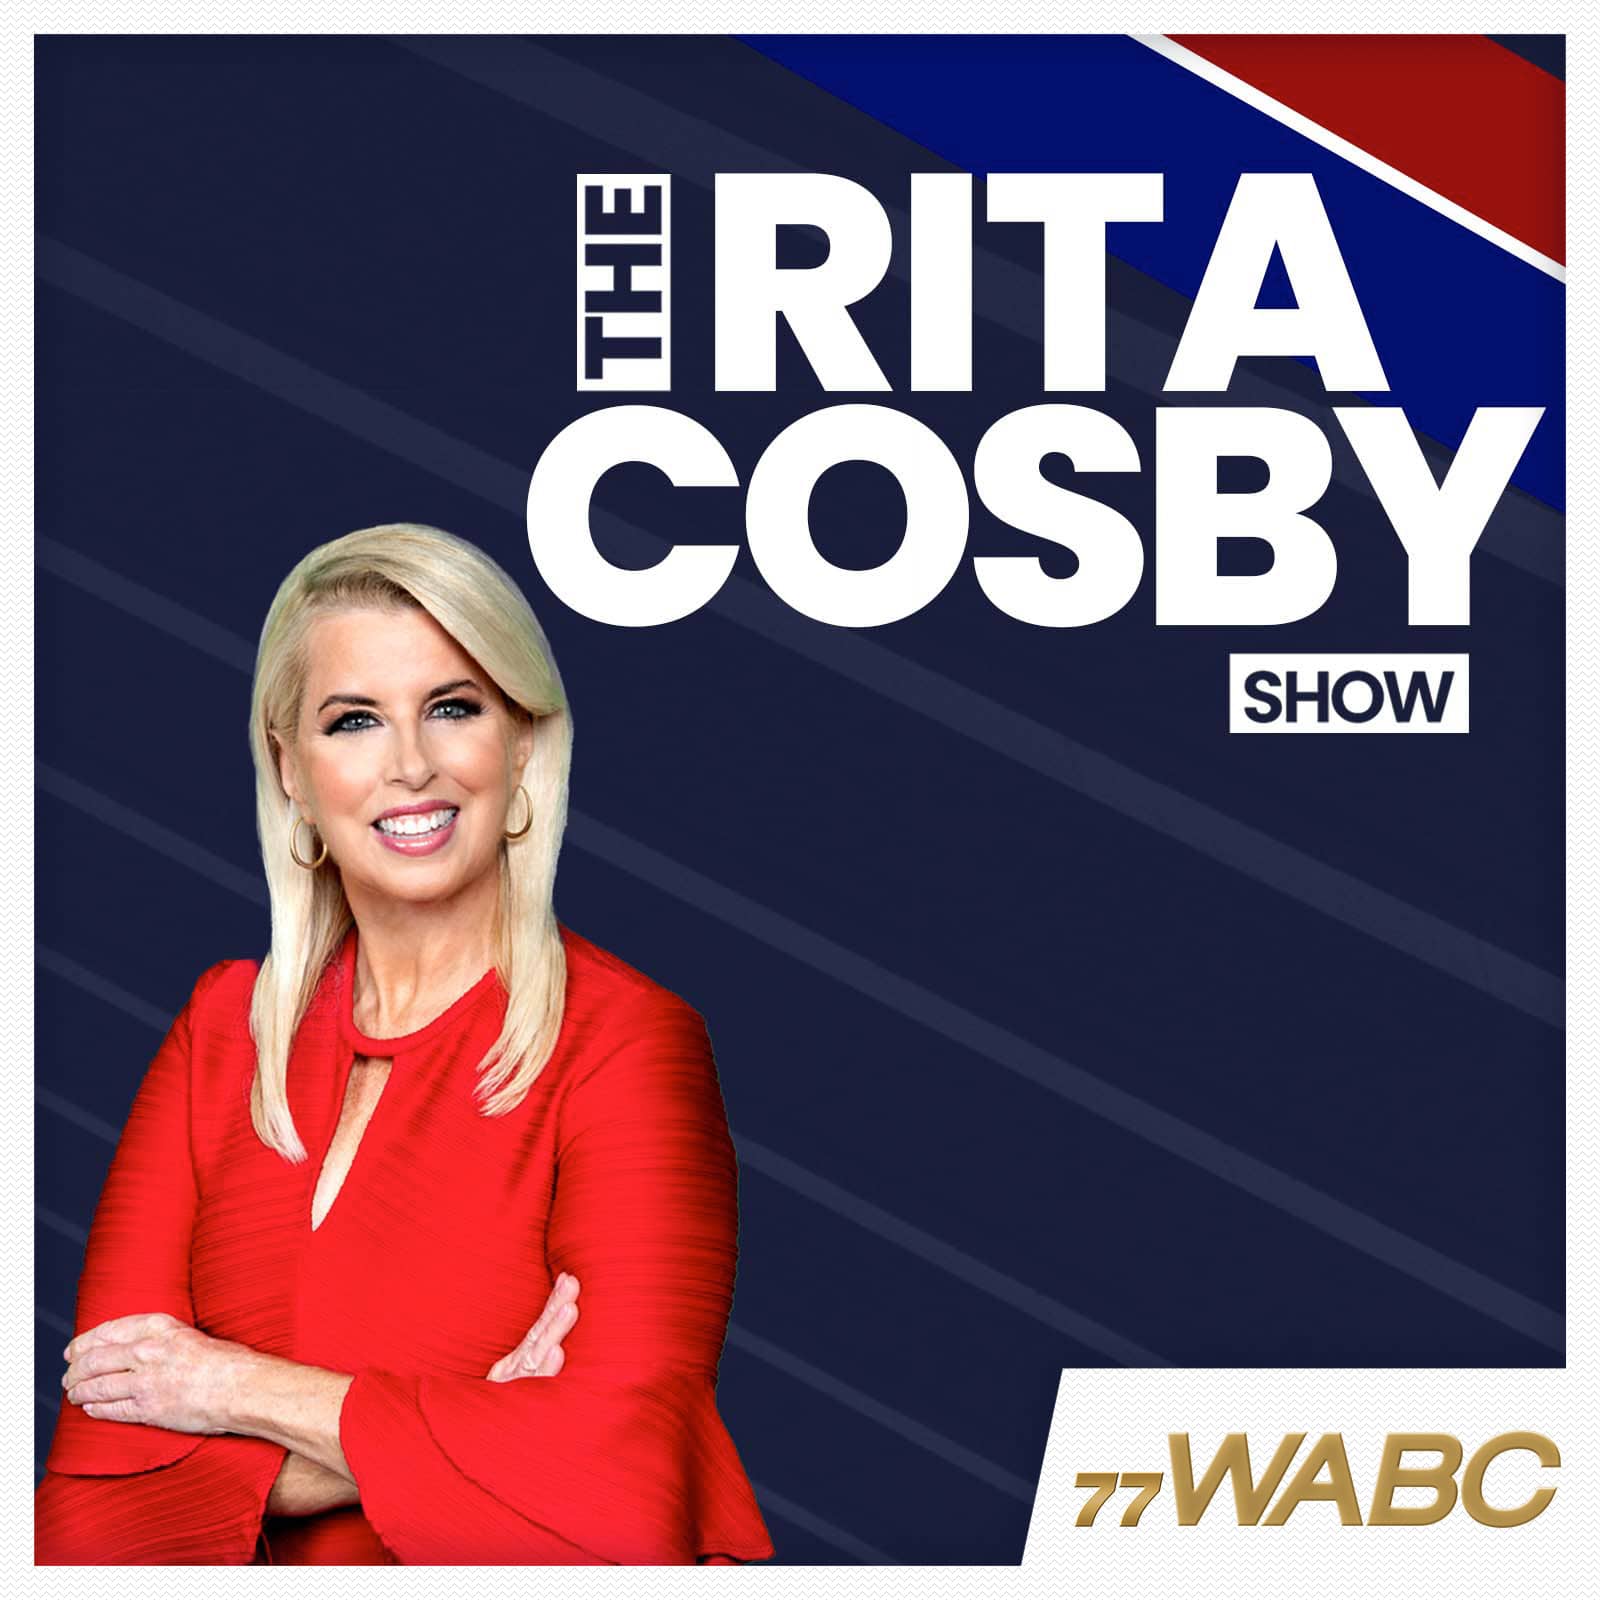 rita-cosby-podcast-new-logo-208